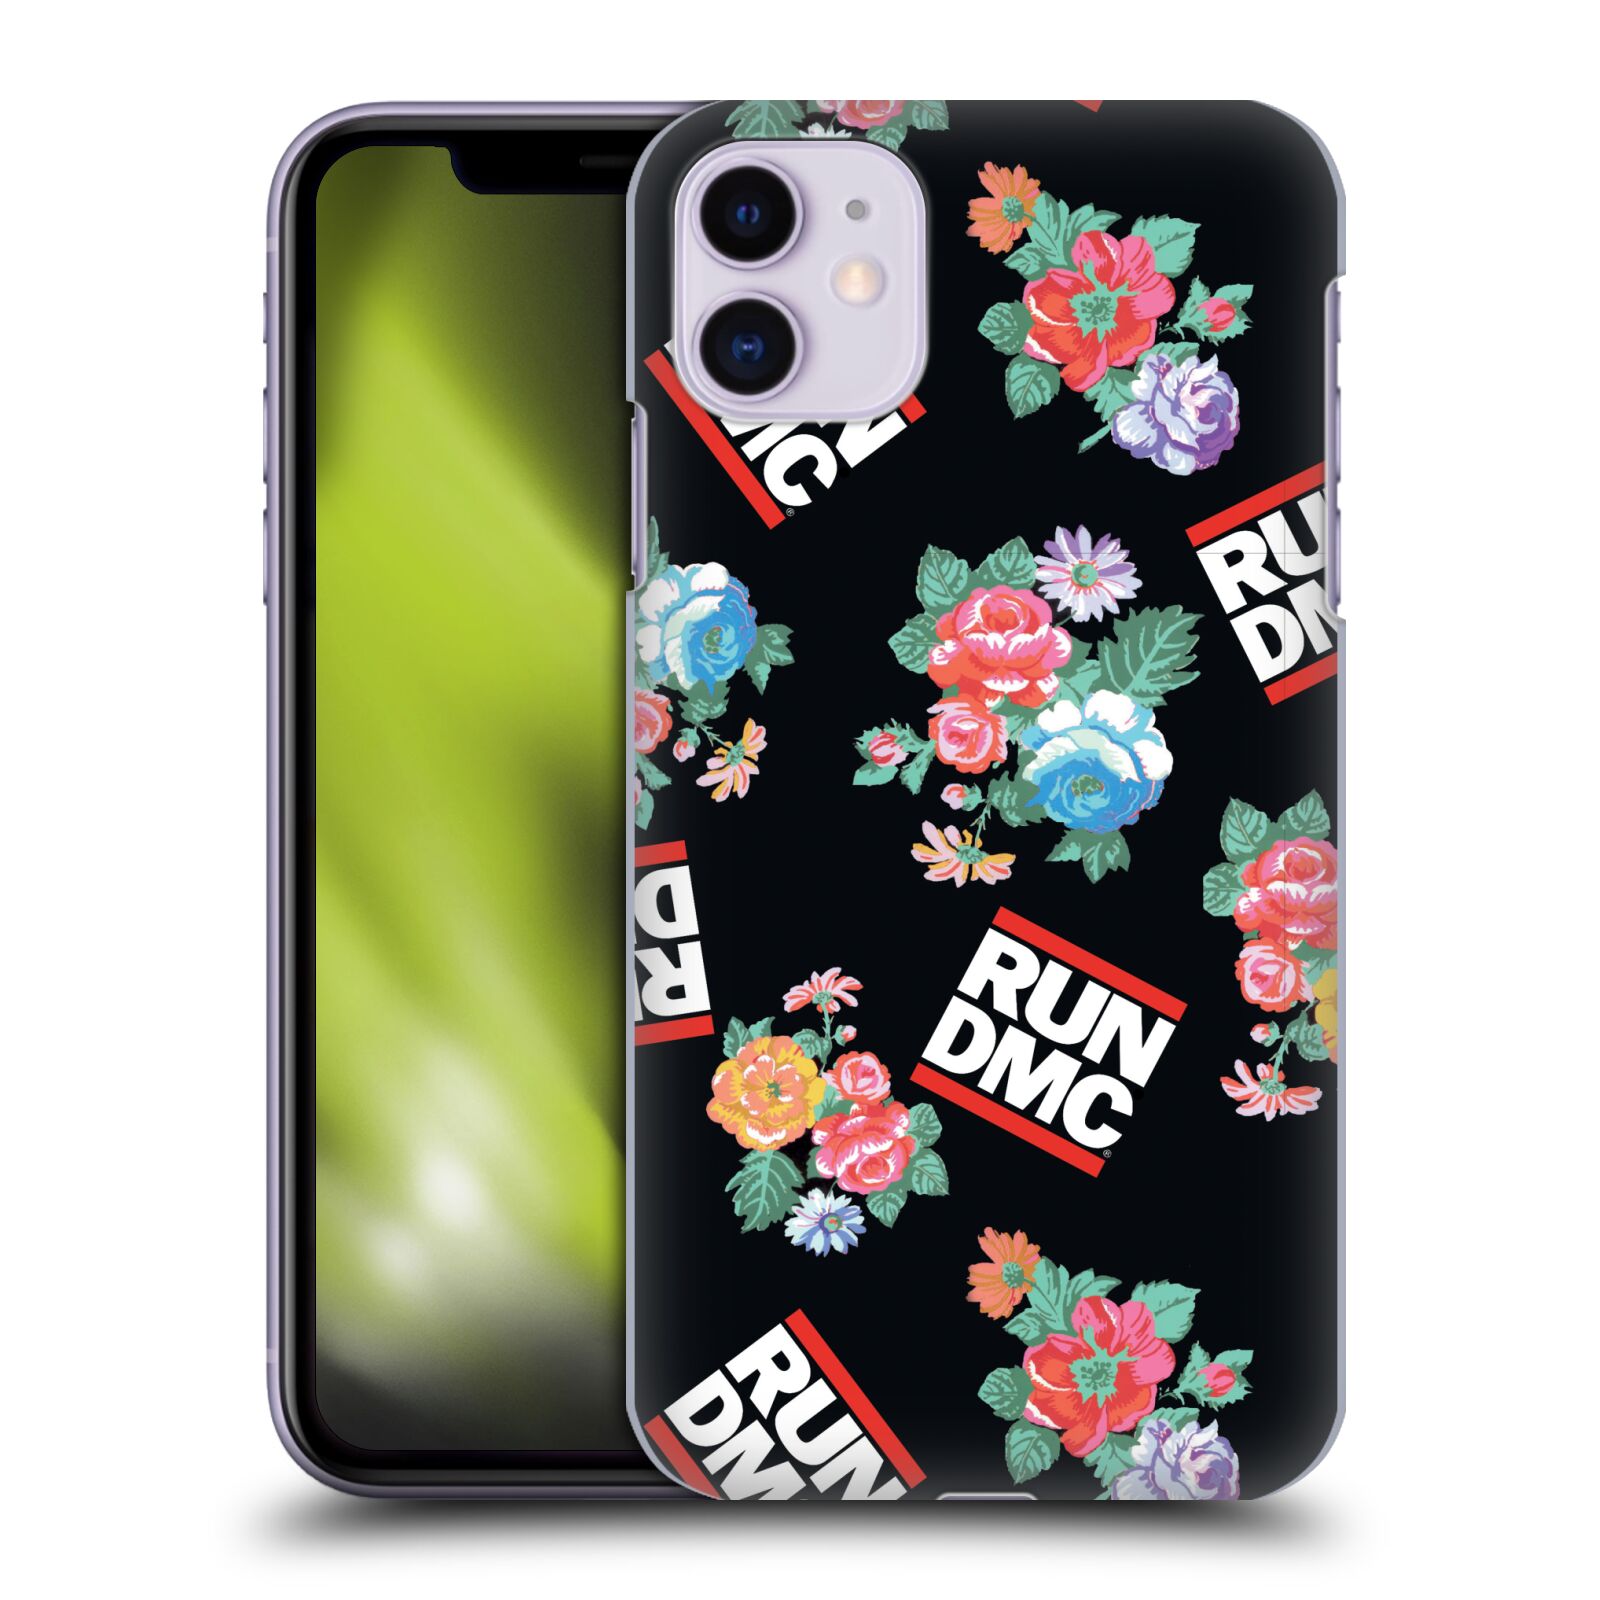 Pouzdro na mobil Apple Iphone 11 - HEAD CASE - rapová kapela Run DMC květiny černé pozadí